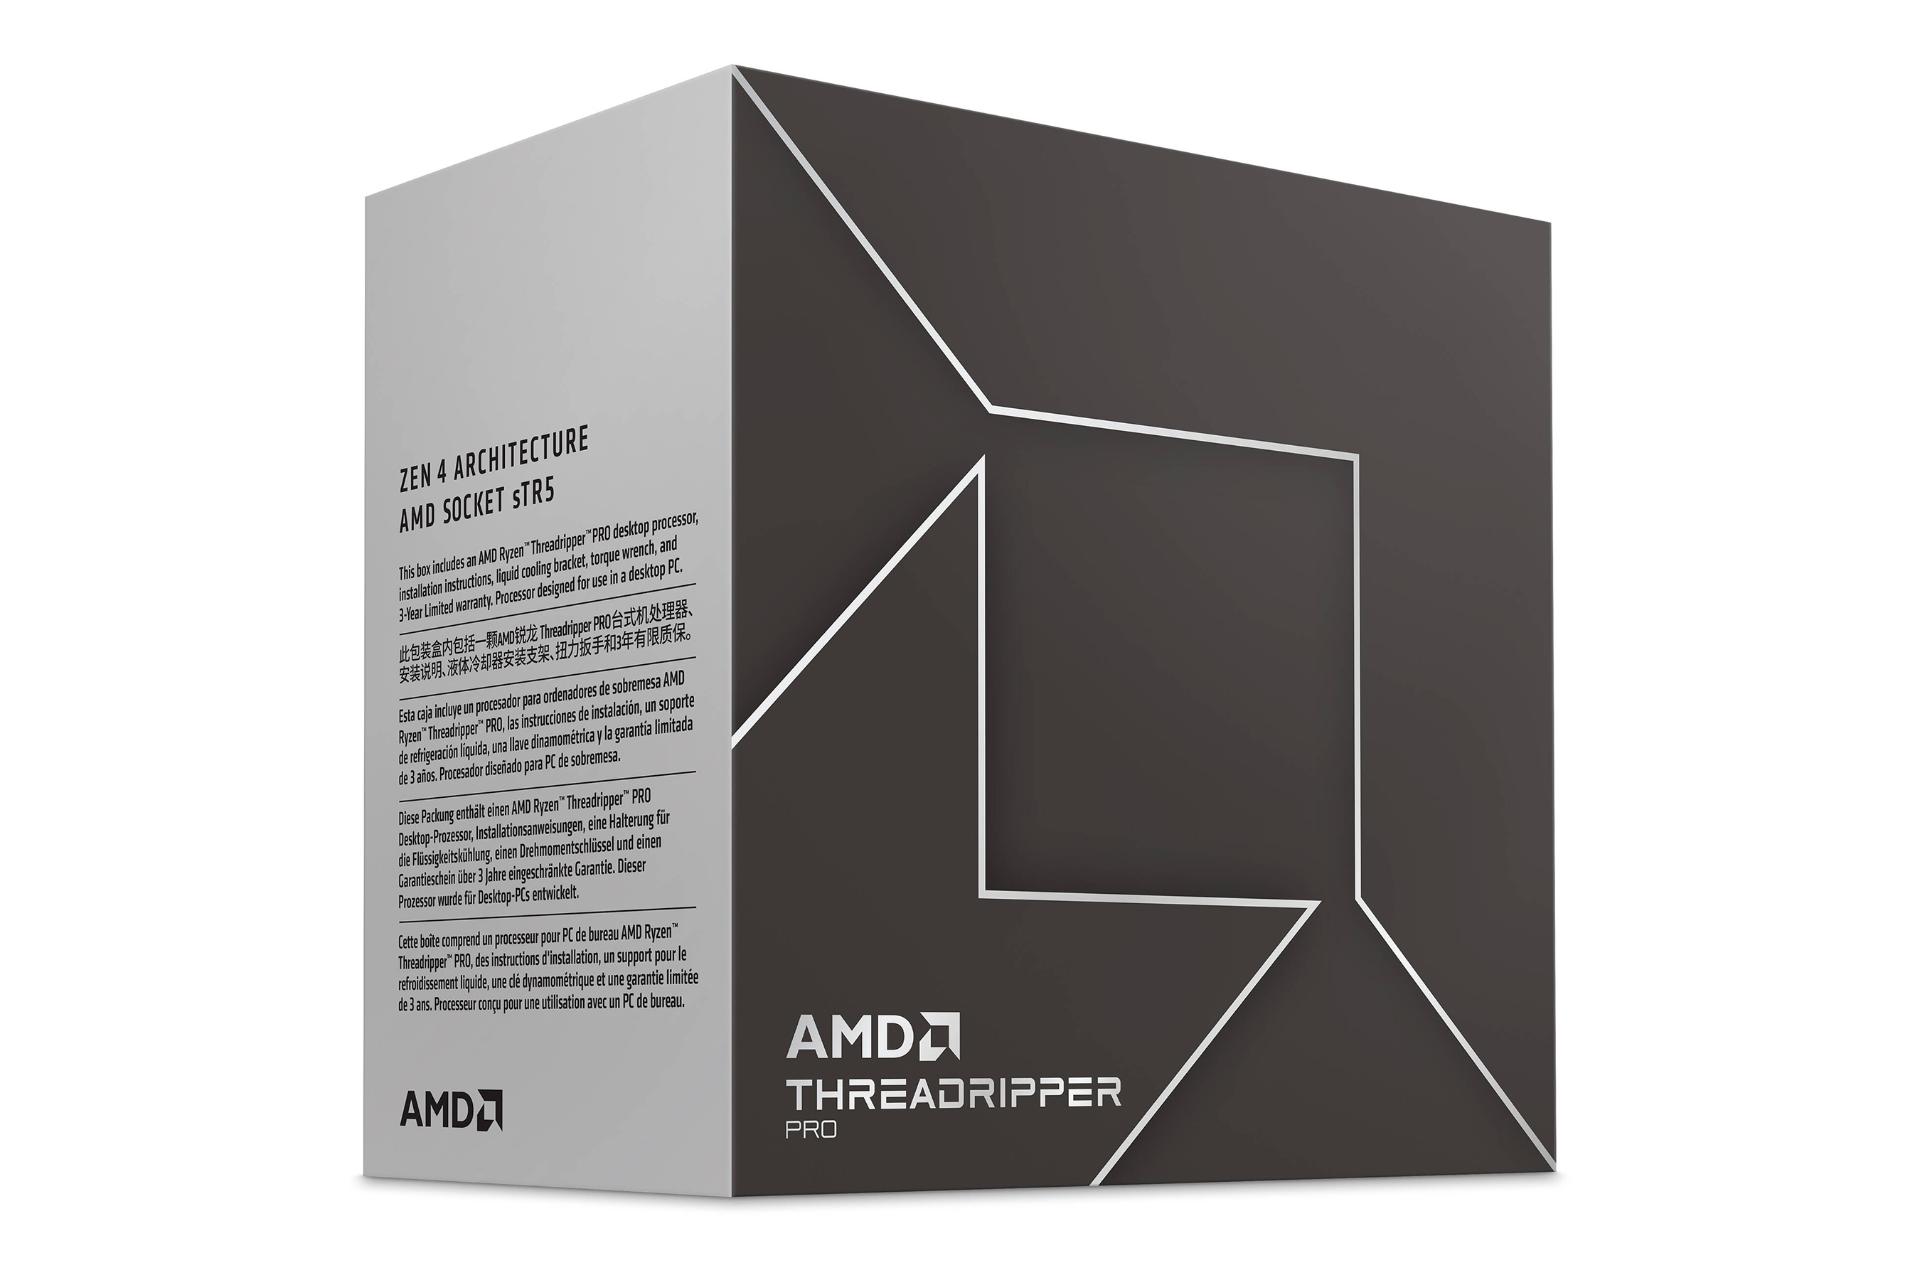 نمای سمت چپ جعبه پردازنده AMD رایزن تردریپر پرو سری 7900 / AMD Ryzen Threadripper PRO 7900 Series